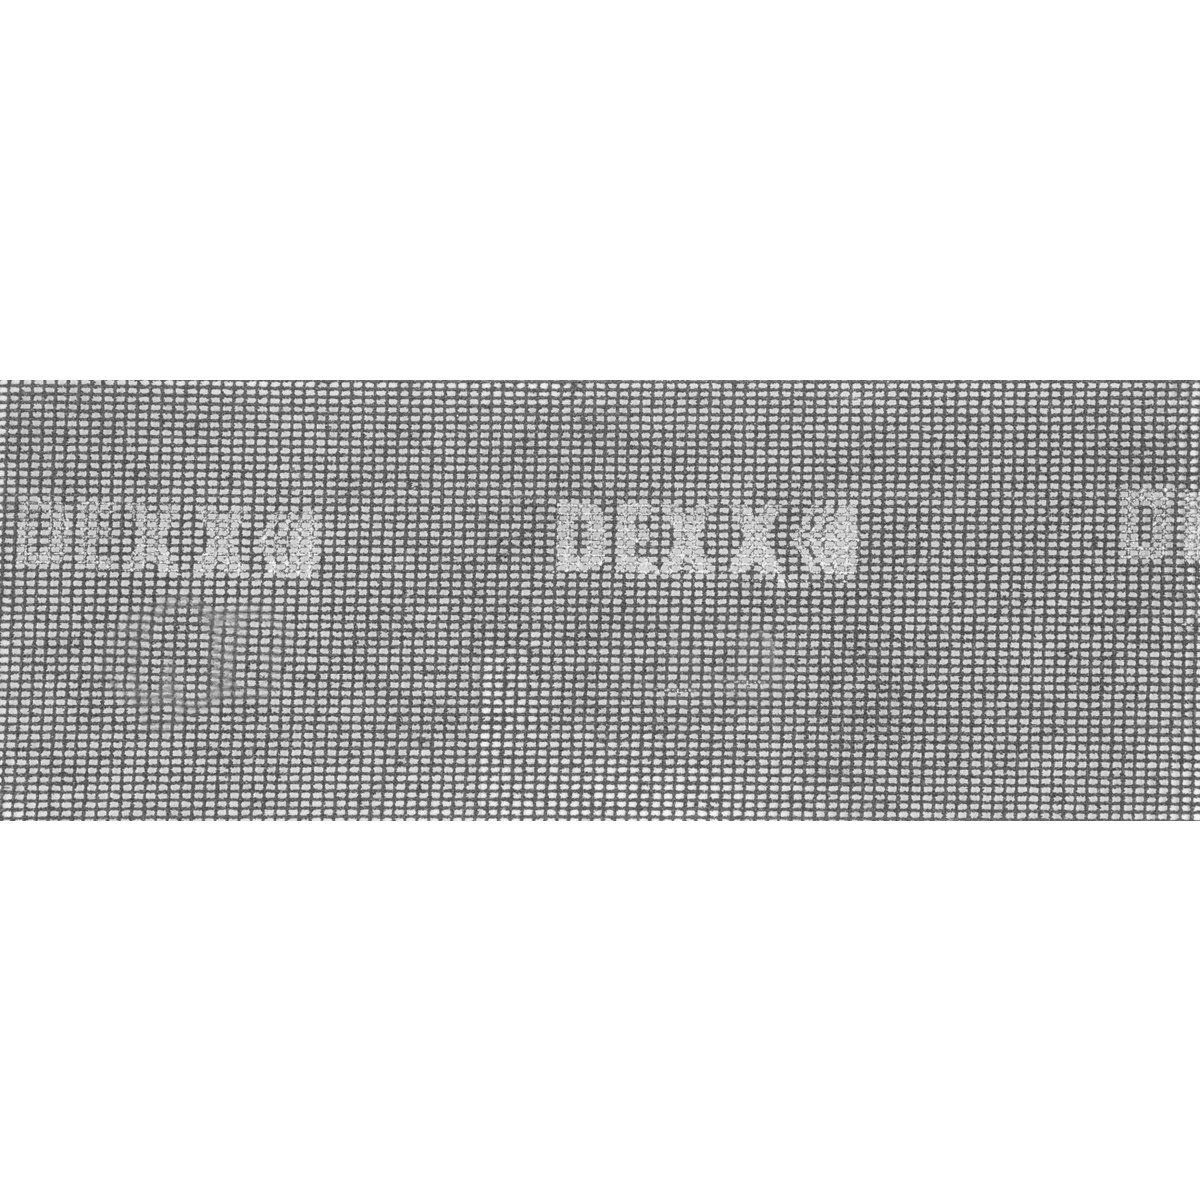 DEXX 105 х 280 мм, Р 100, 3 листа, шлифовальная сетка 35550-100_z01